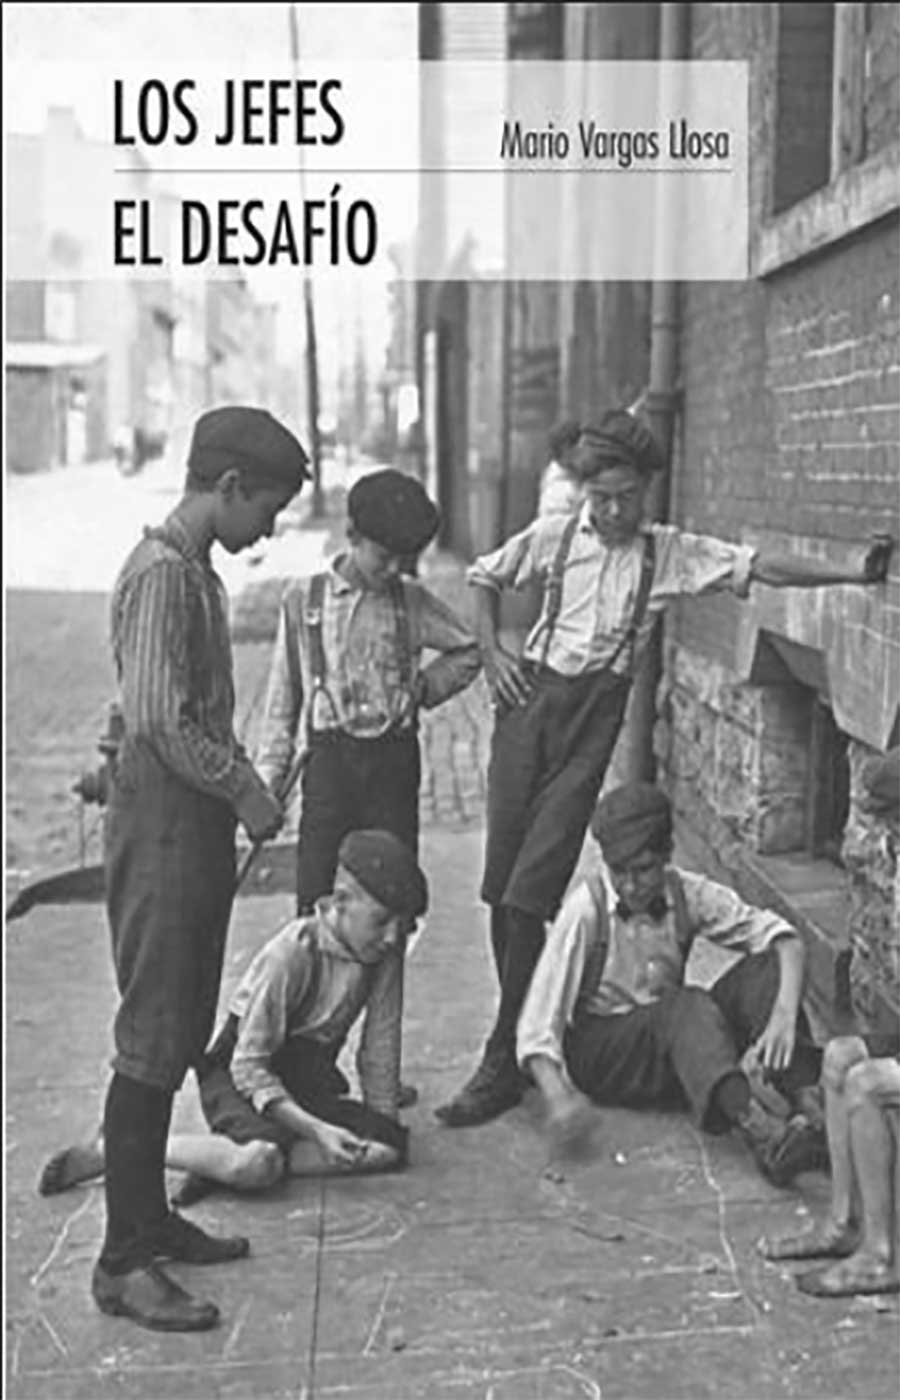 El abuelo es un cuento del escritor peruano Mario Vargas Llosa, que fue publicado por primera vez en el diario El Comercio de Lima, en 1956. Pasó luego a integrar la colección de cuentos Los Jefes, del mismo autor (1959).